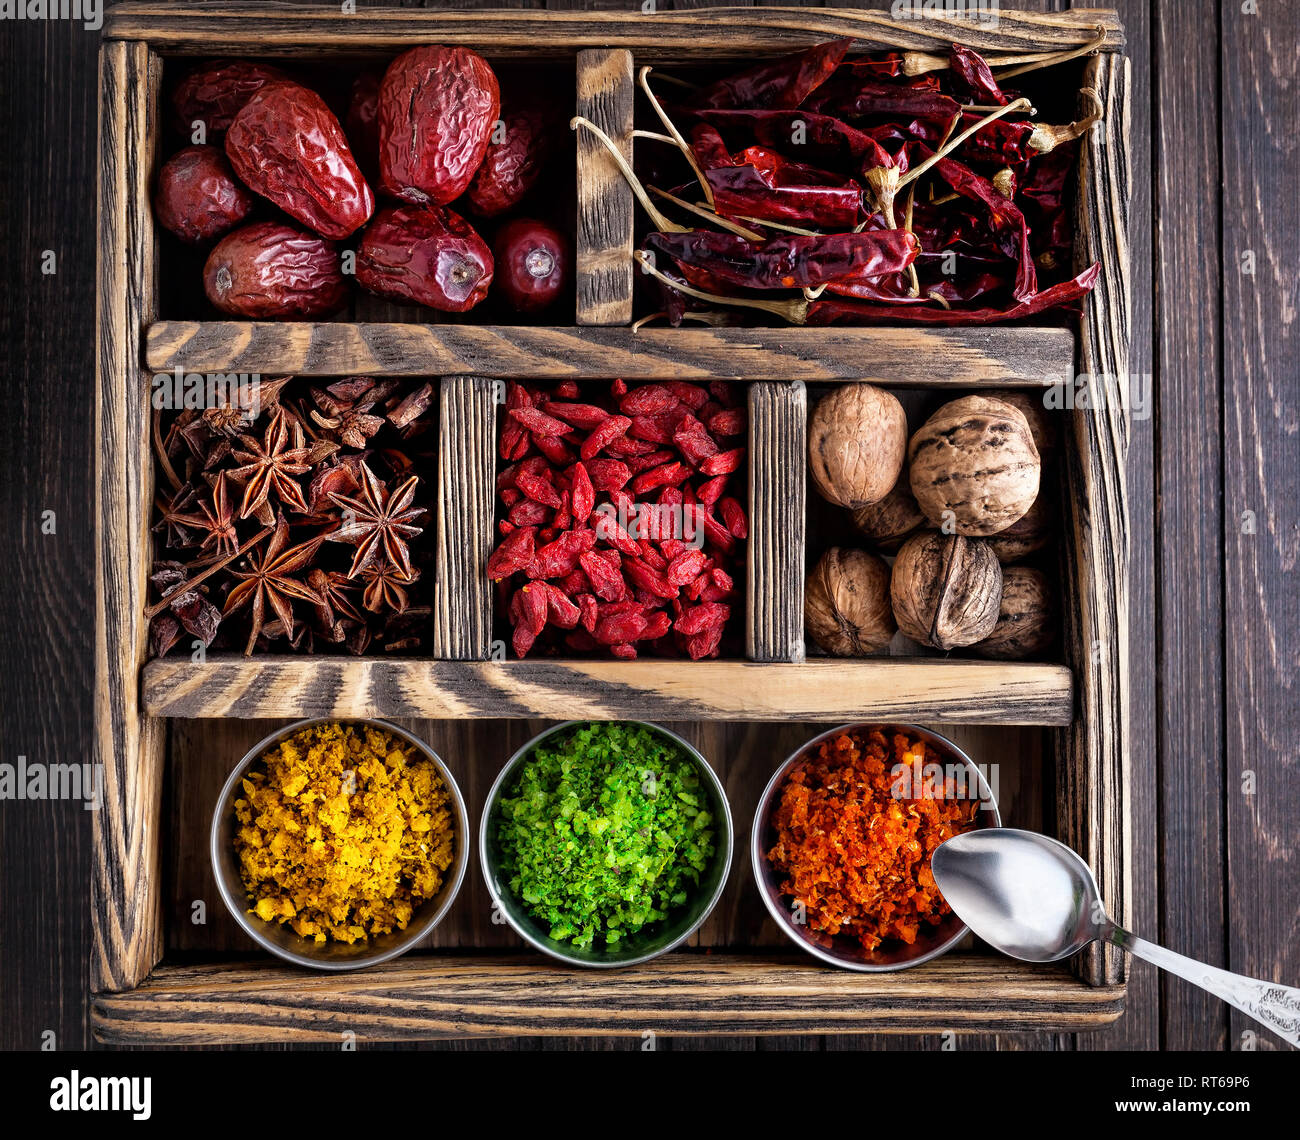 Spezie, frutta secca e noci nella scatola di legno Foto Stock